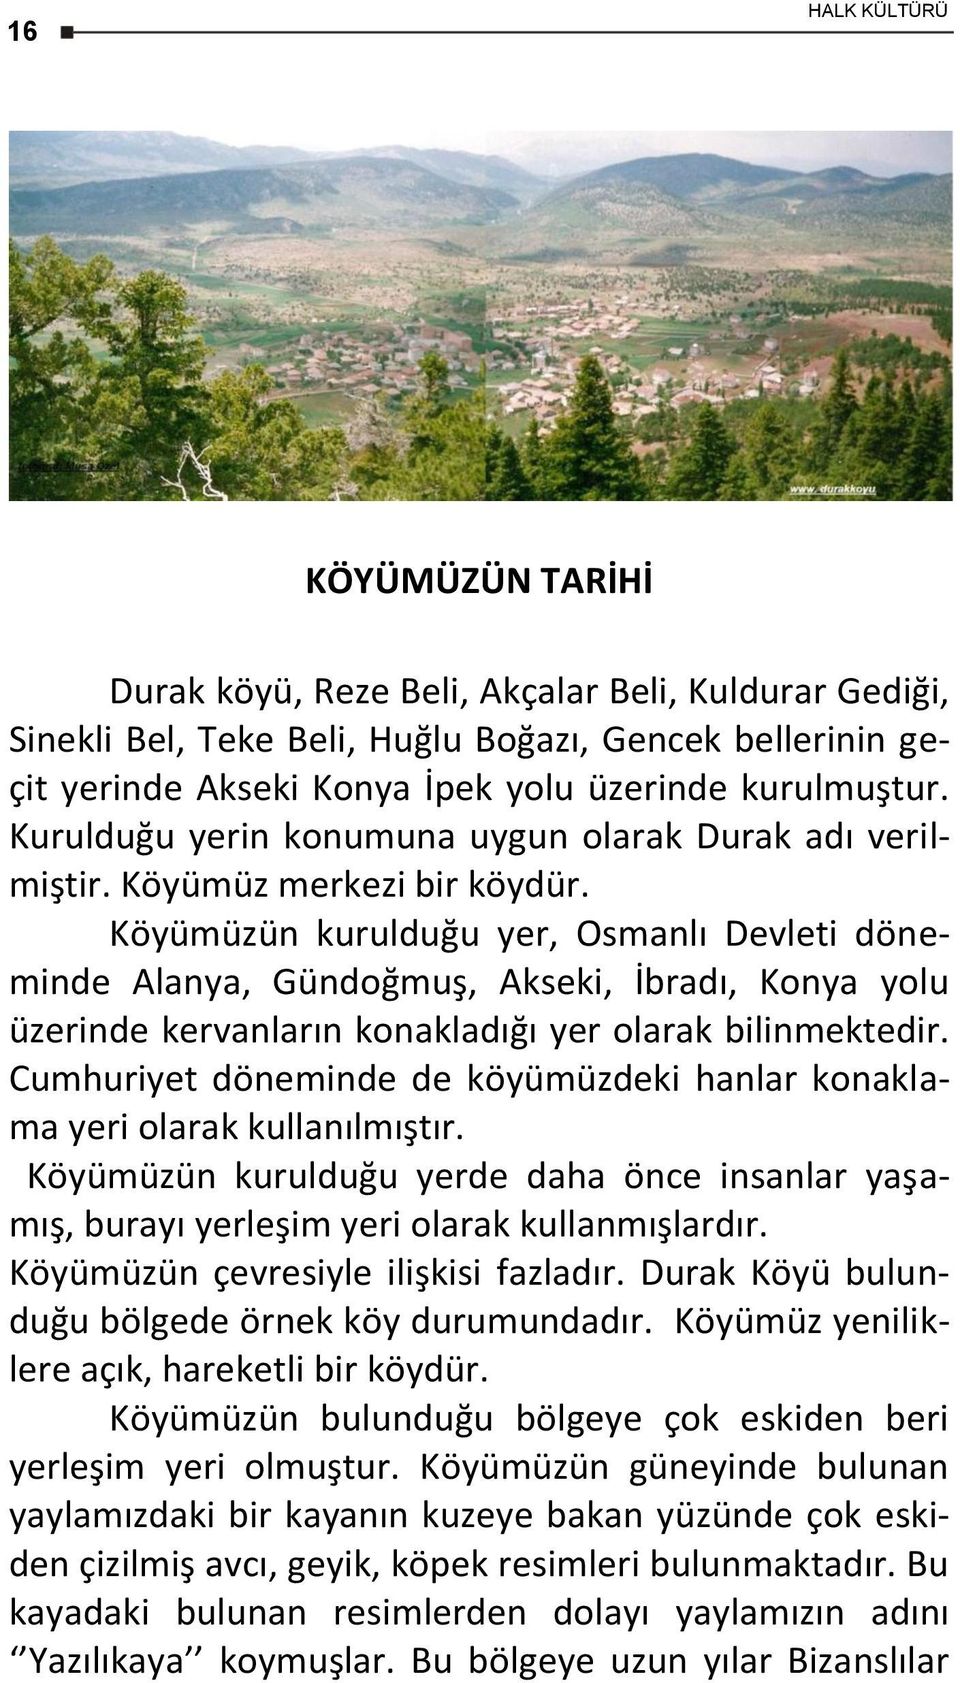 Köyümüzün kurulduğu yer, Osmanlı Devleti döneminde Alanya, Gündoğmuş, Akseki, İbradı, Konya yolu üzerinde kervanların konakladığı yer olarak bilinmektedir.